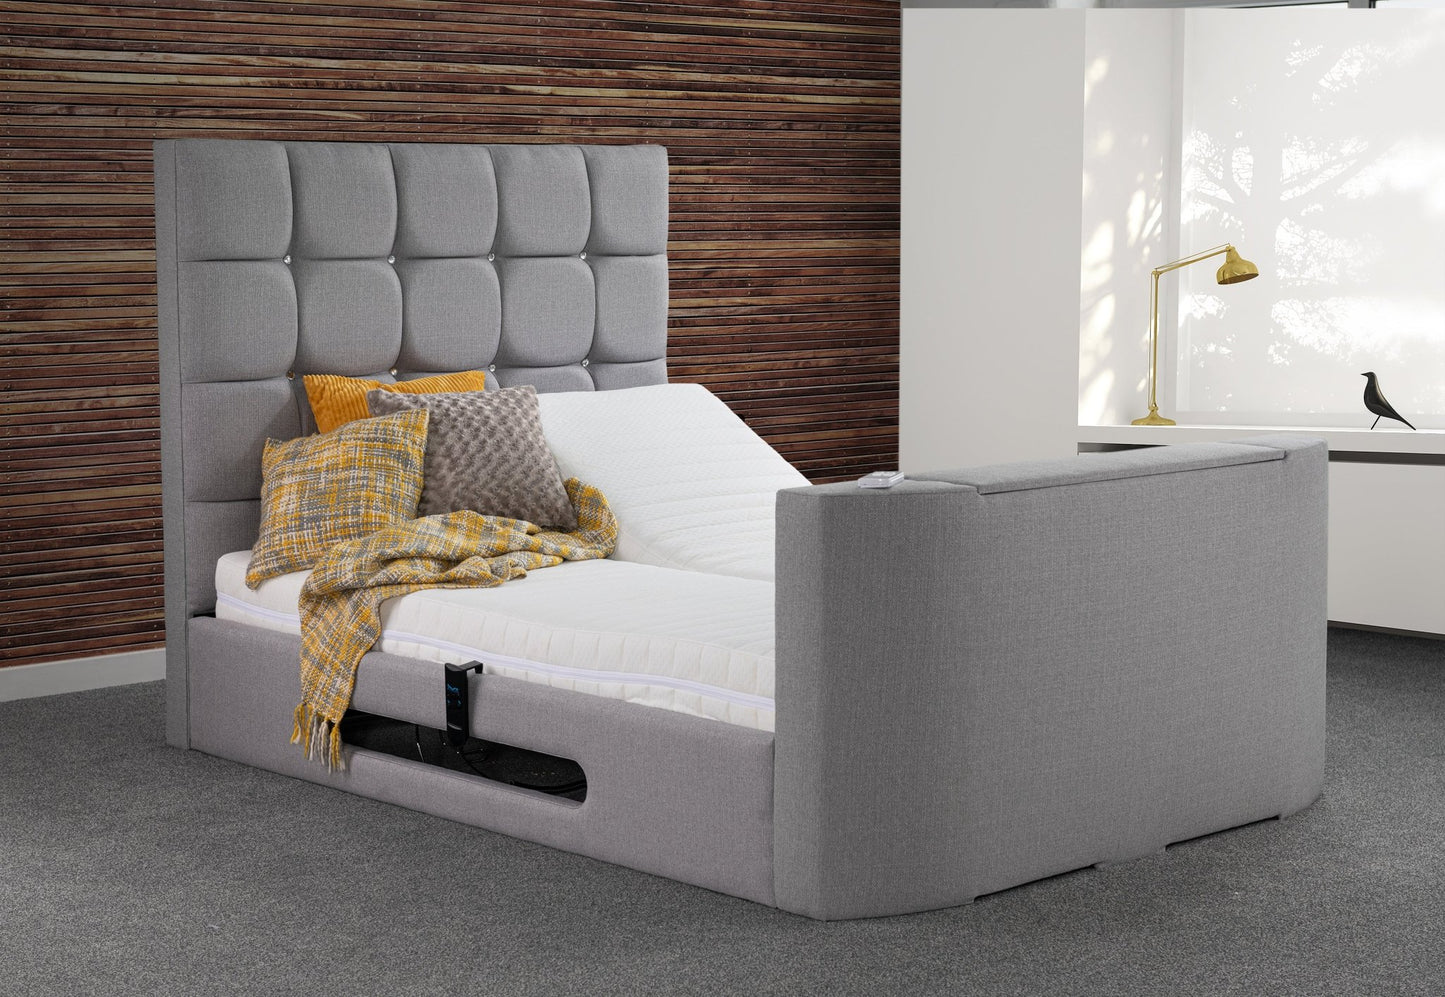 Jasmine Jewel Adjustable TV Bed Frame - Sweet Dreams - TV Beds Northwest - Adjustable - adjustable bed